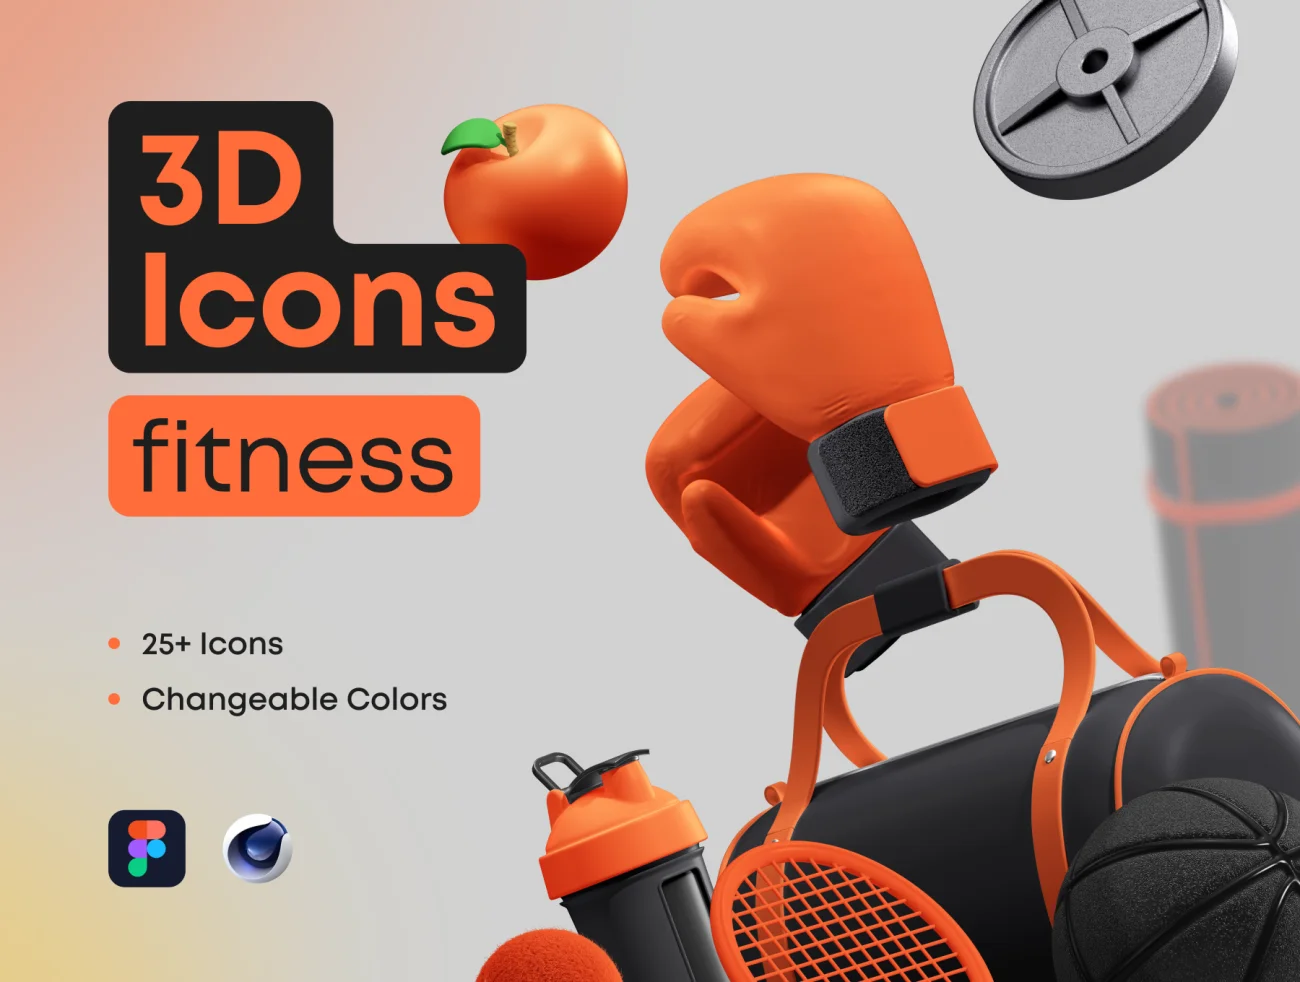 25个运动健身器械设备体育3D图标 3D Icons Pack – Fitness插图1